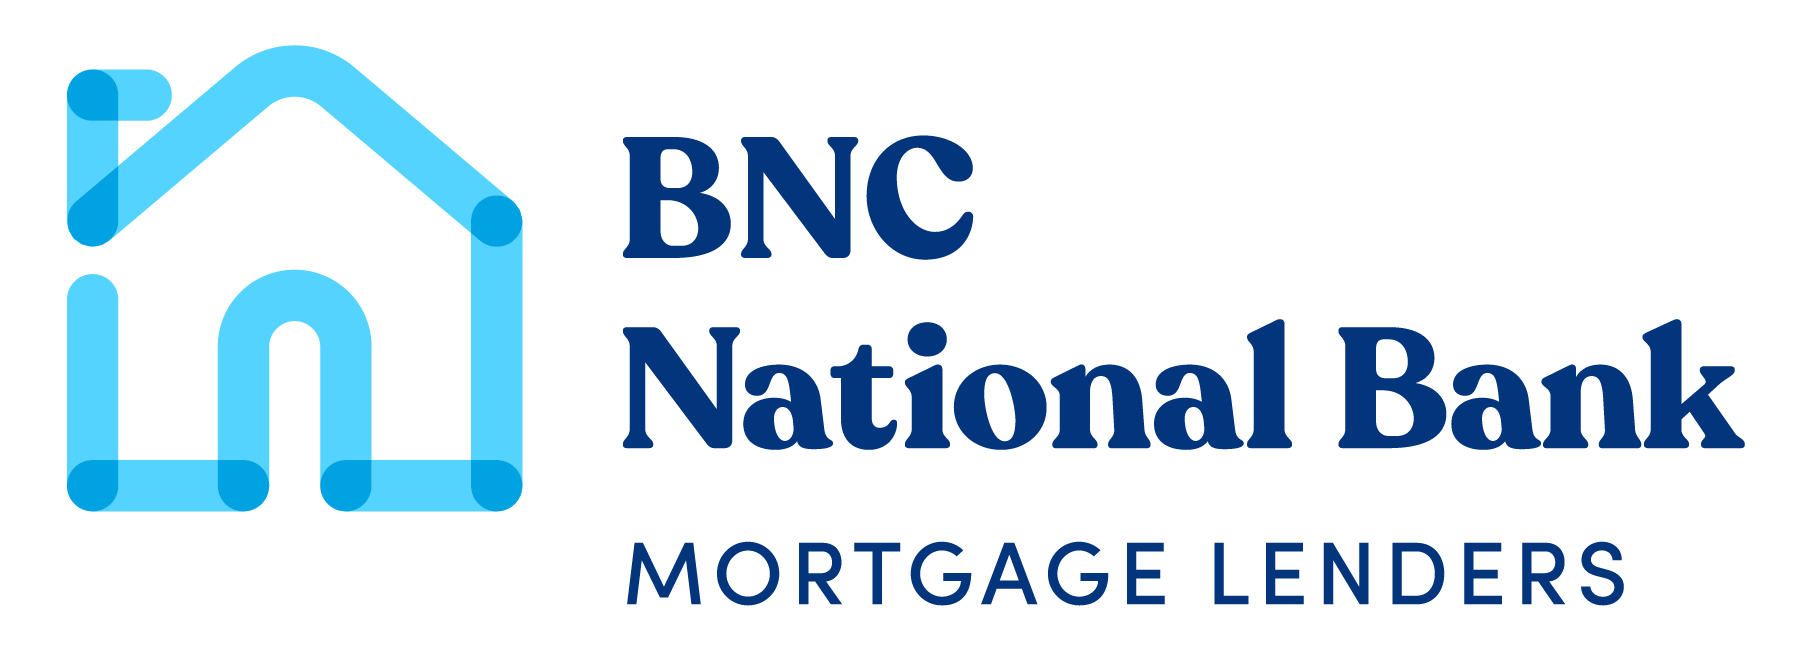 BNC National Bank Mortgage